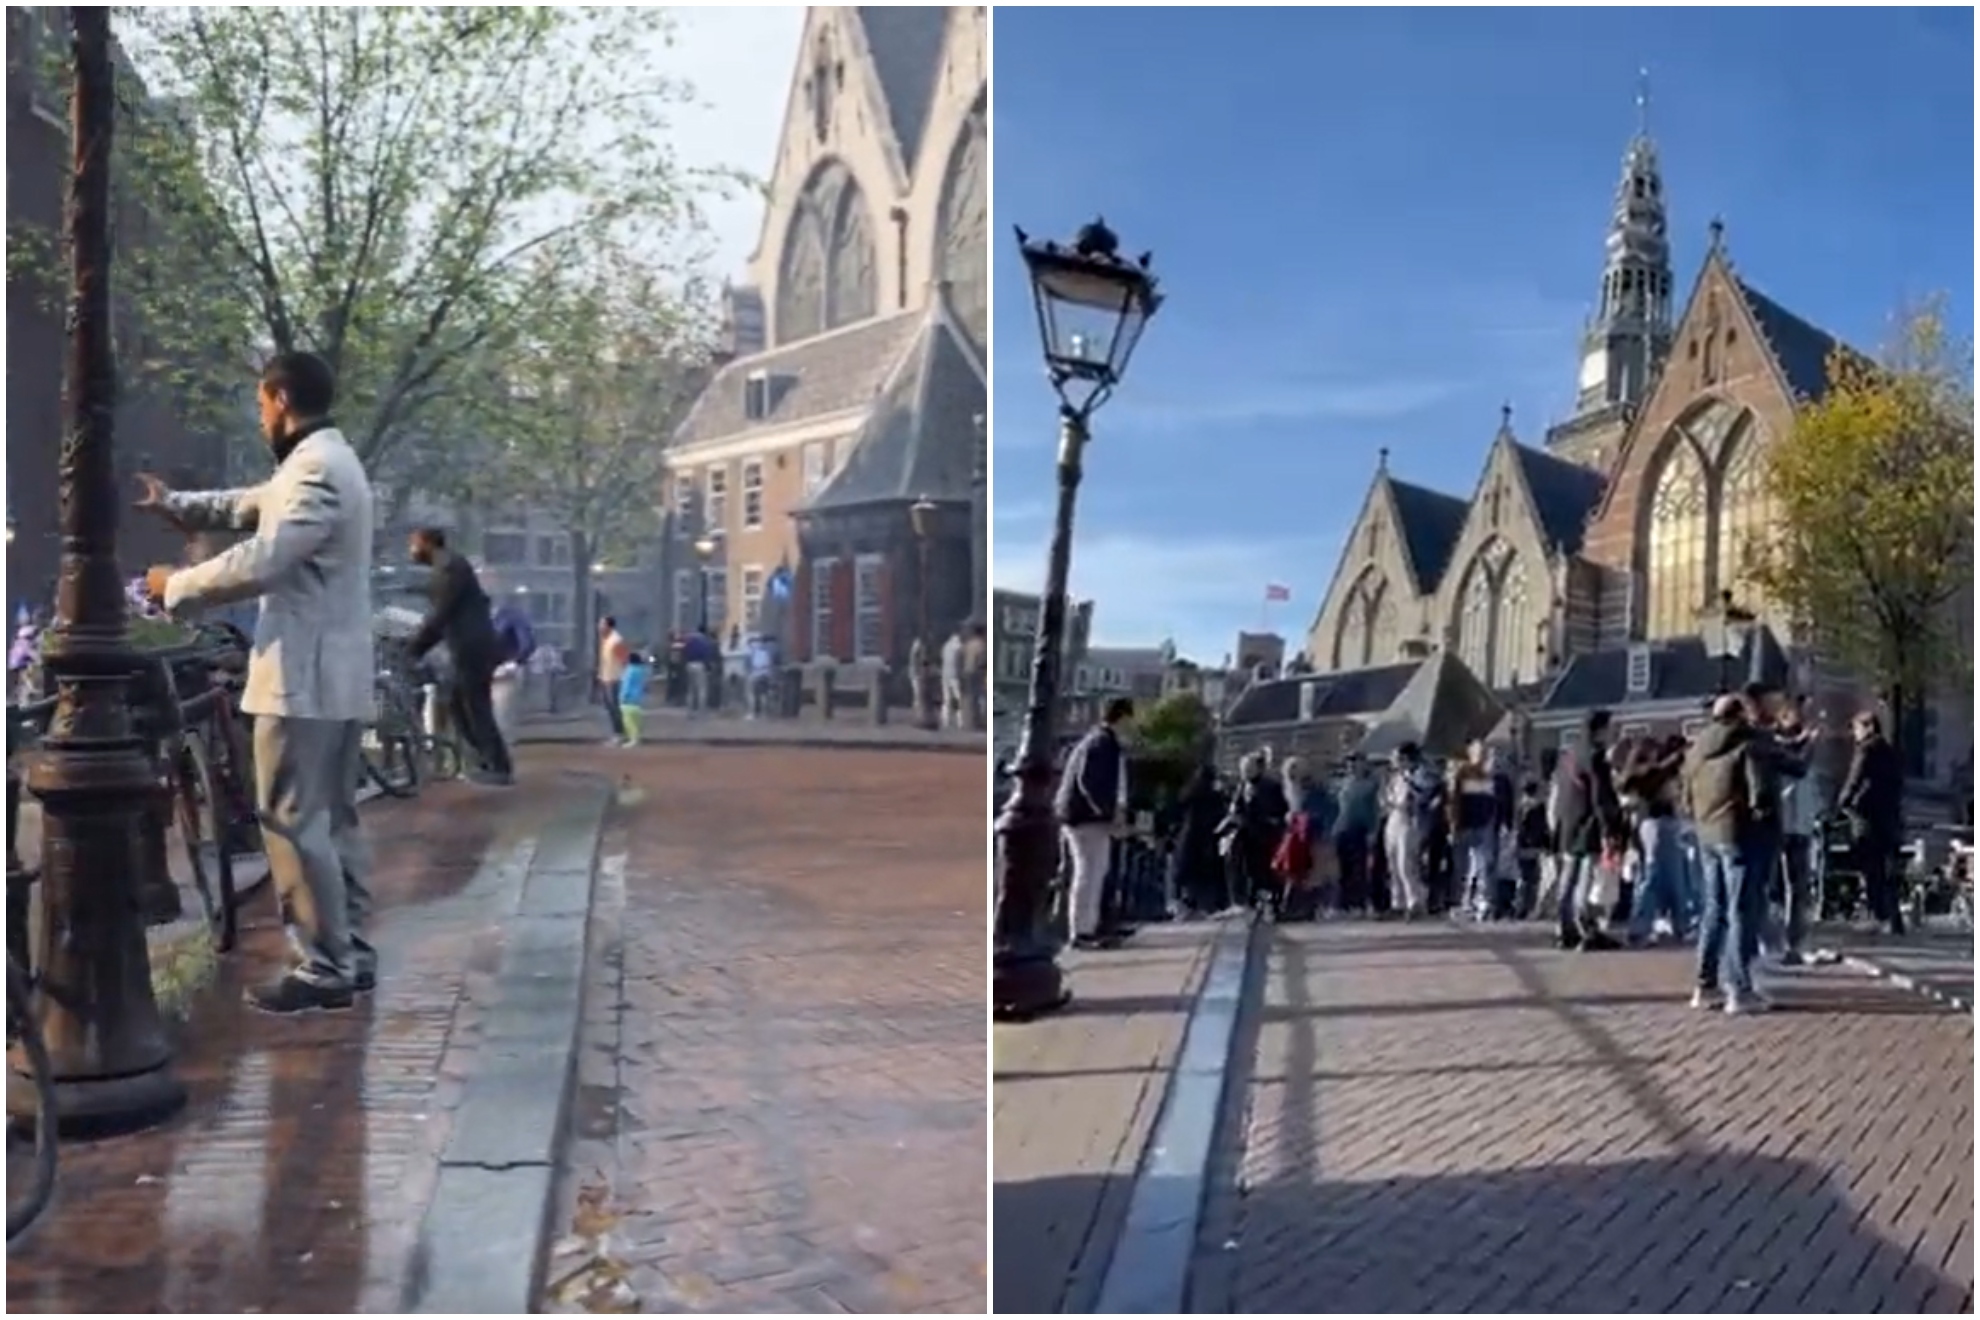 Imagen del CoD MW2 (izquierda) y de la zona real de Amsterdam (derecha)